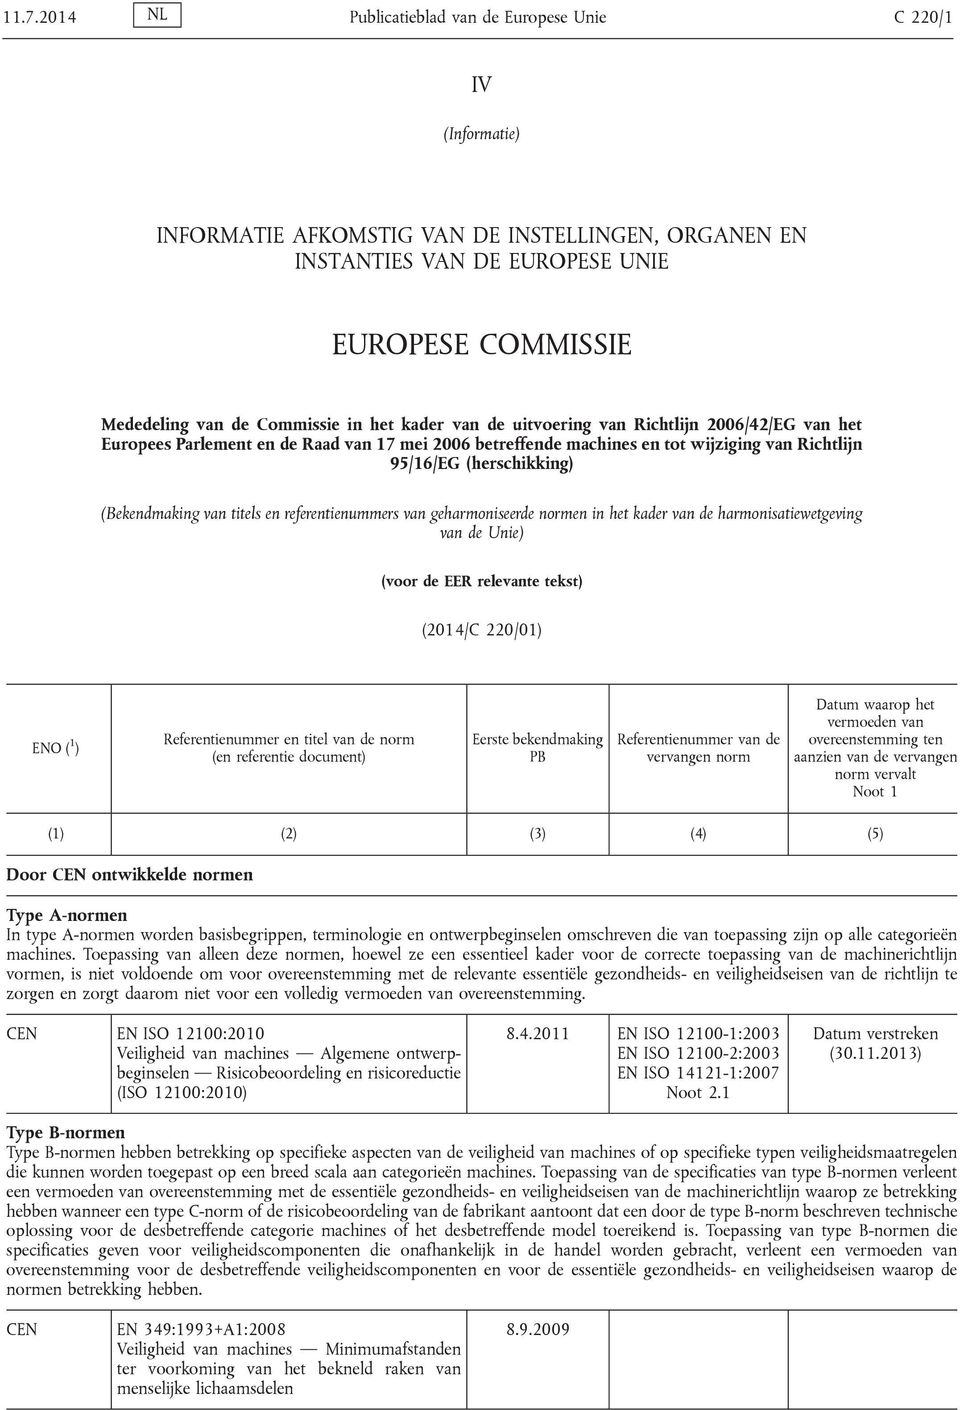 (Bekendmaking van titels en referentienummers van geharmoniseerde normen in het kader van de harmonisatiewetgeving van de Unie) (voor de EER relevante tekst) (2014/C 220/01) ENO ( 1 )